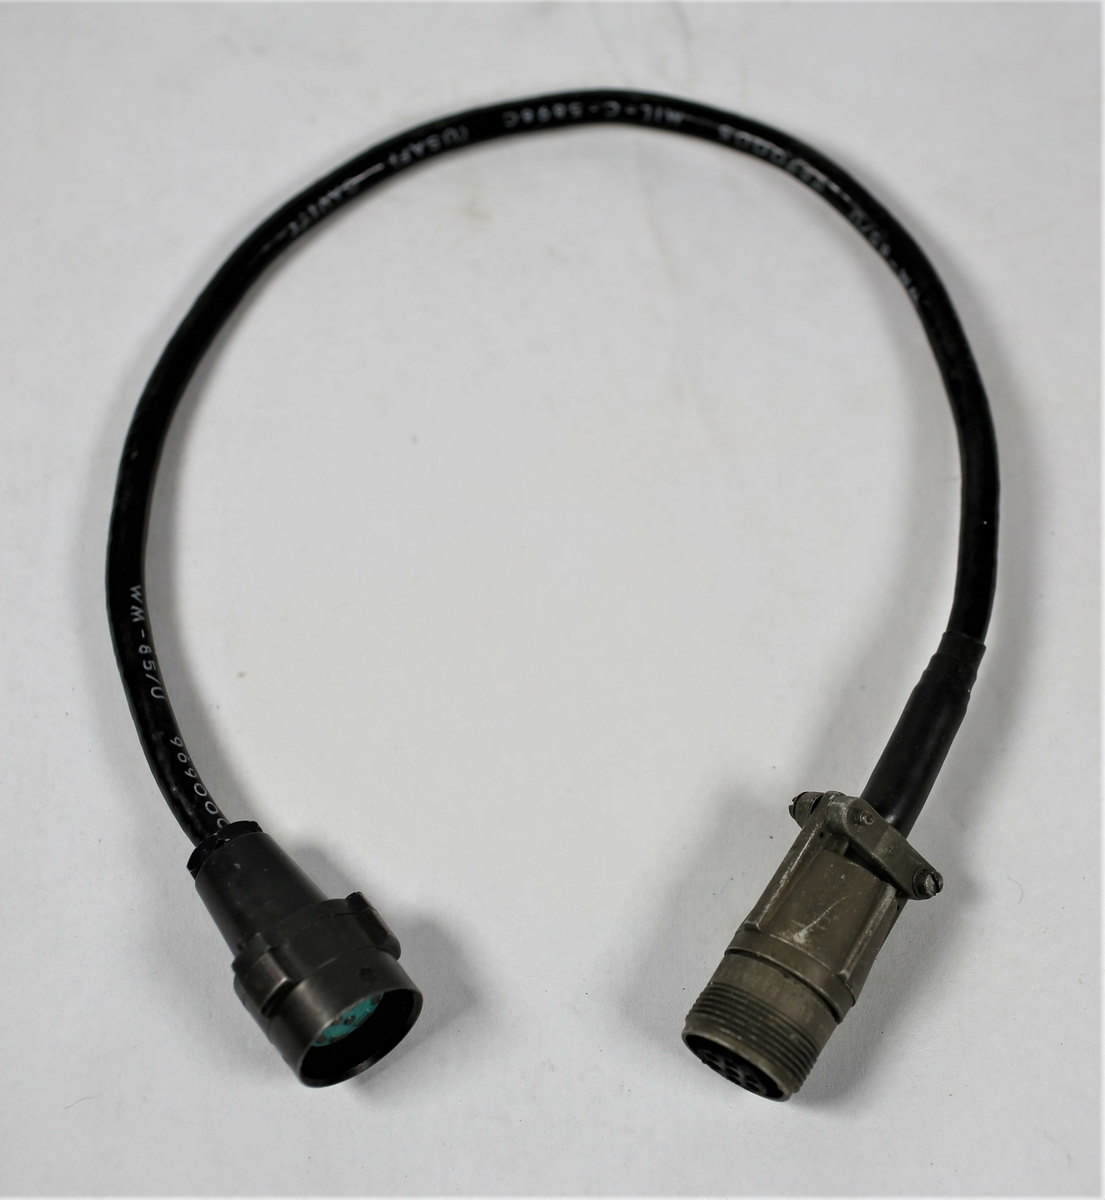 Adapterkabler for intercom og/eller telebrief samband.